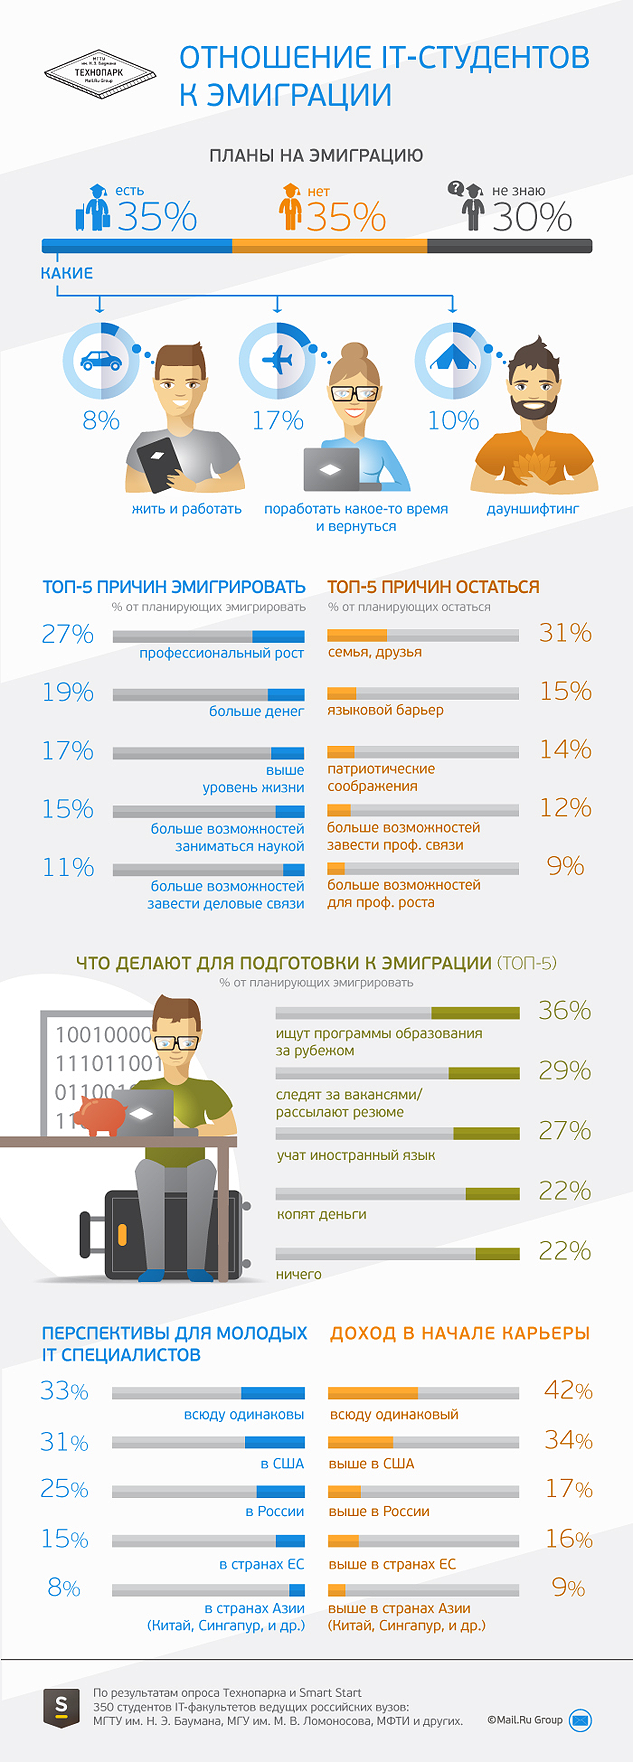 Эмигрировать хотя бы временно хотят 35% российских IT-студентов